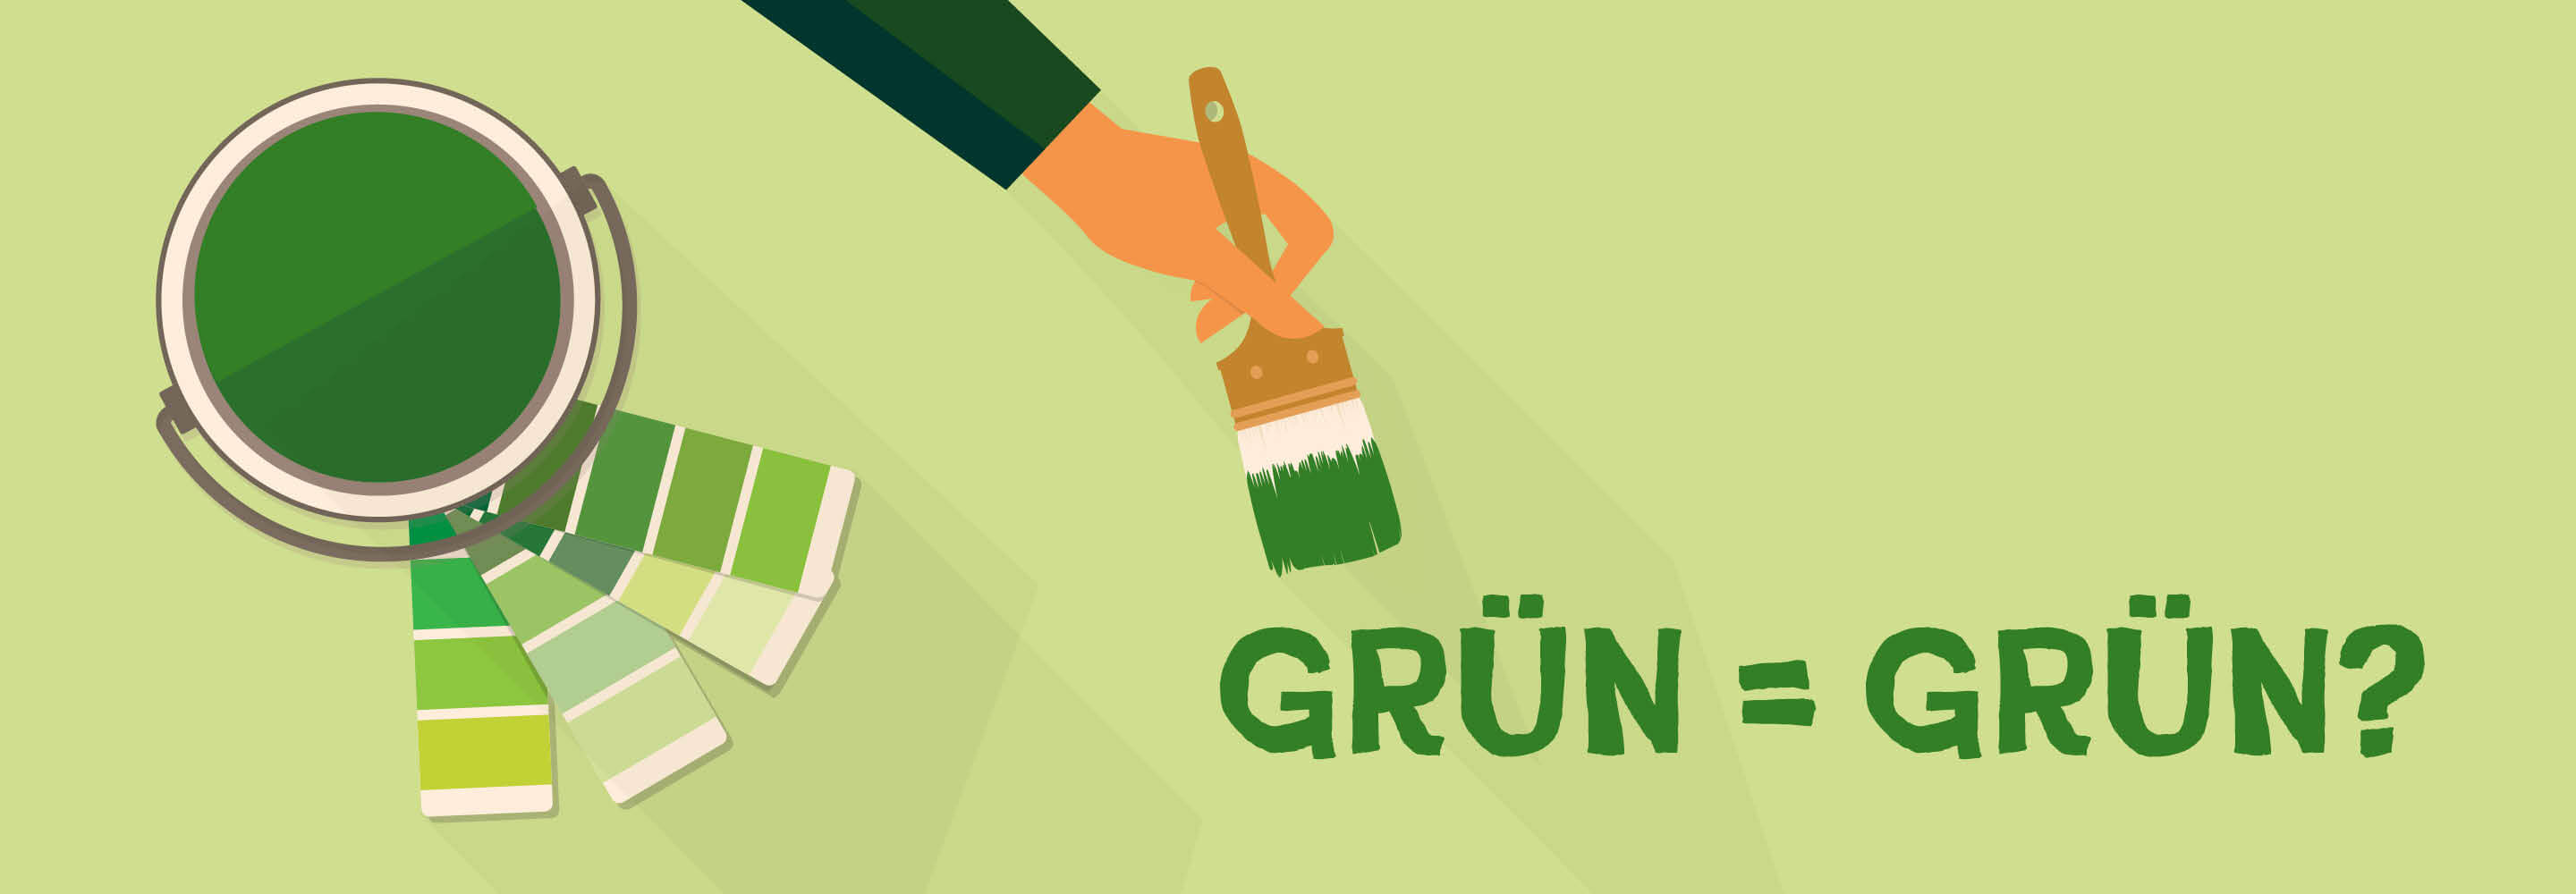 Green_Claims_Richtlinie_Gruen_gleich_Gruen